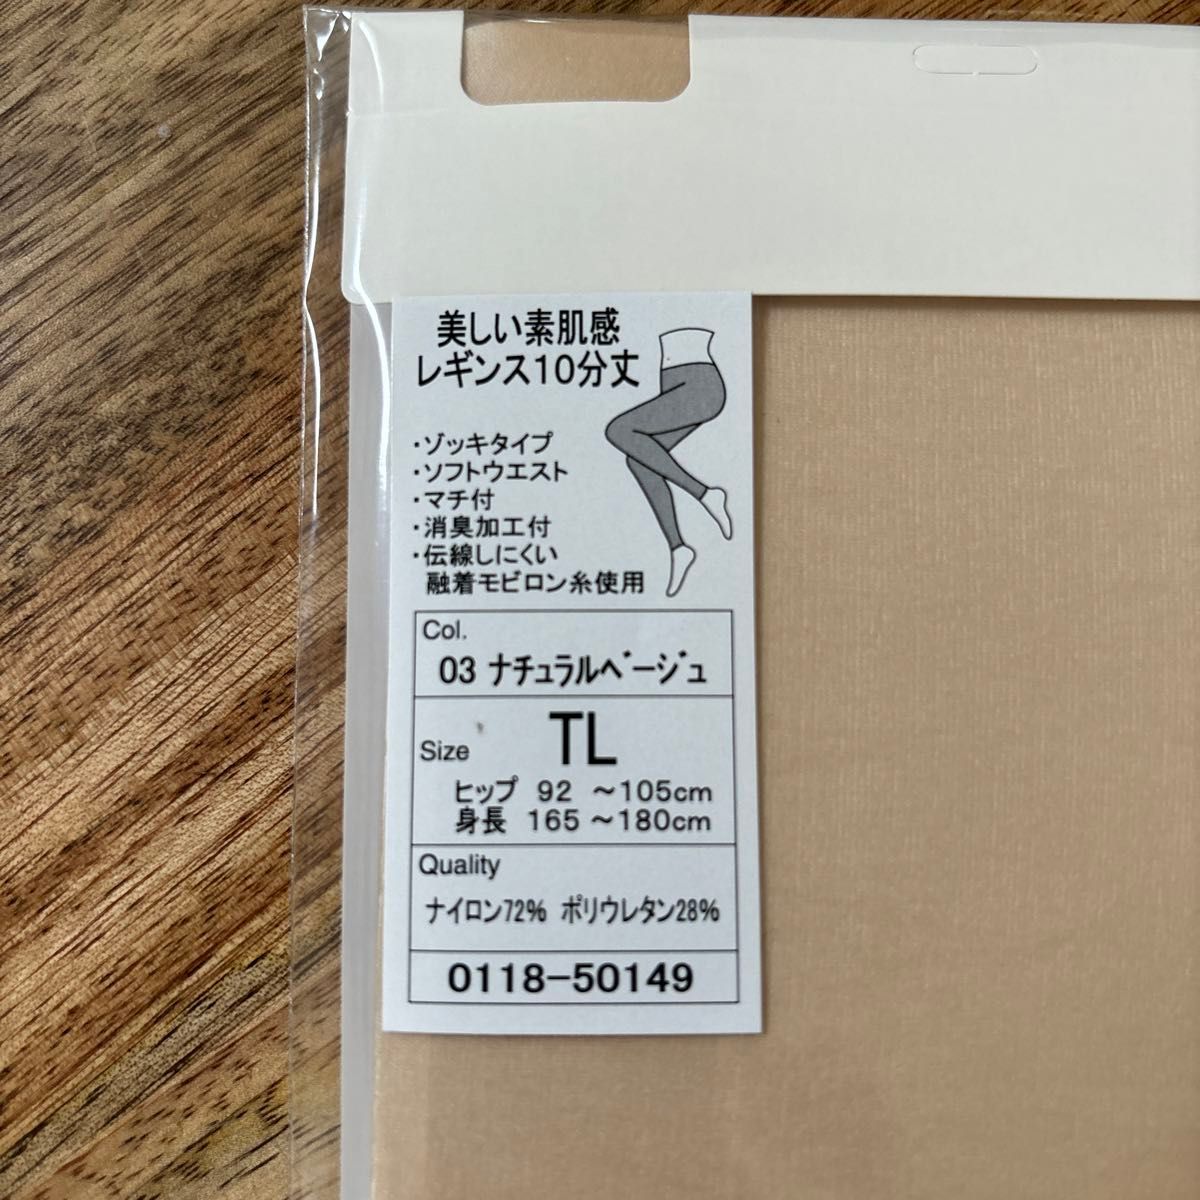 伝線しにくい 美しい素肌感レギンス10分丈(TL) レギンス ストッキング 靴下屋 tabio 新品 日本製